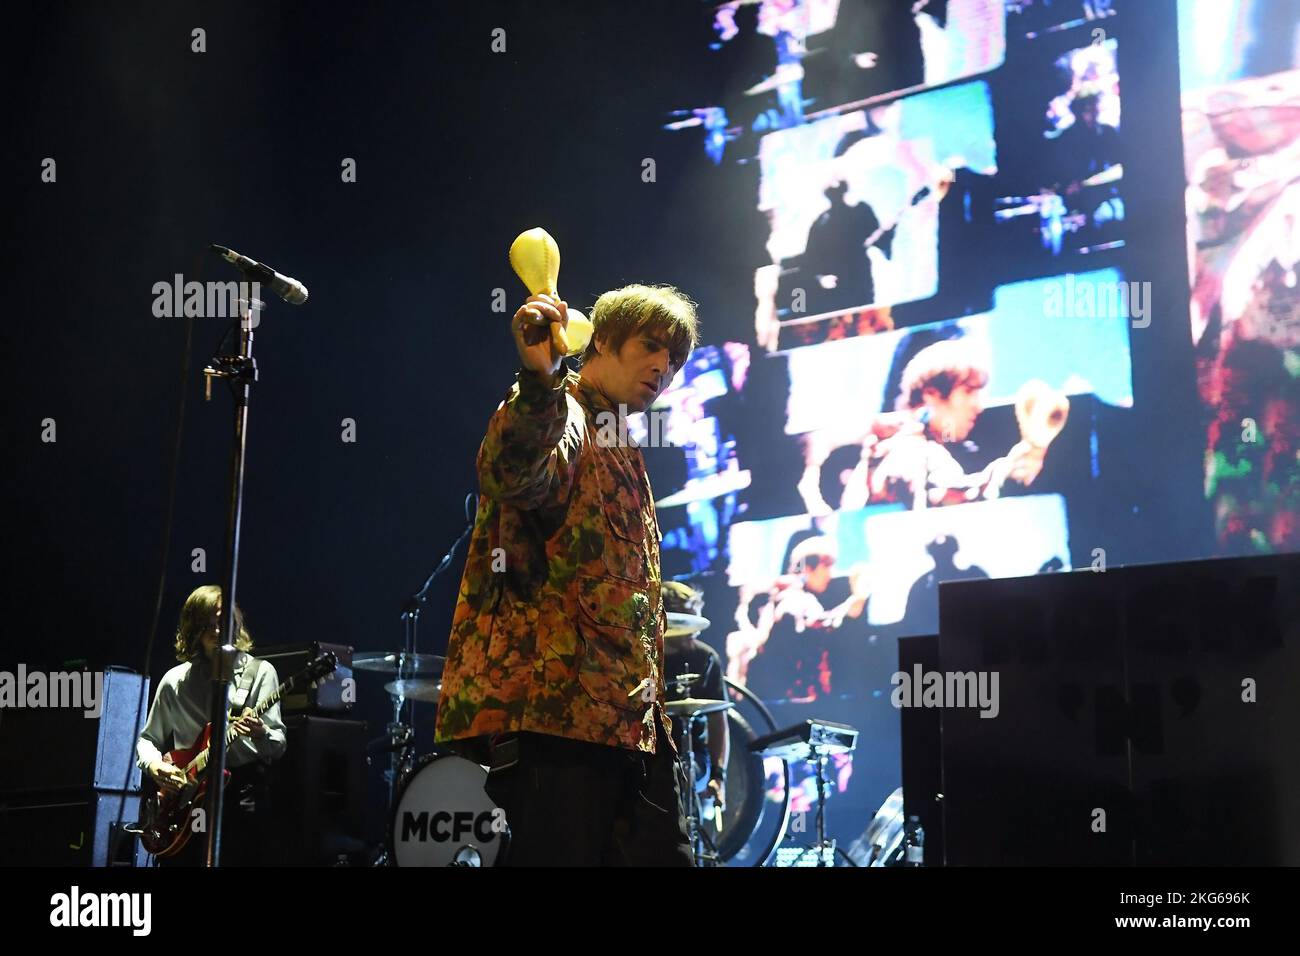 Rio de Janeiro, 16 novembre 2022. Singer Liam Gallagher ex cantante della band Oasis, durante uno spettacolo al Qualistage nella città di Rio de Janeiro Foto Stock